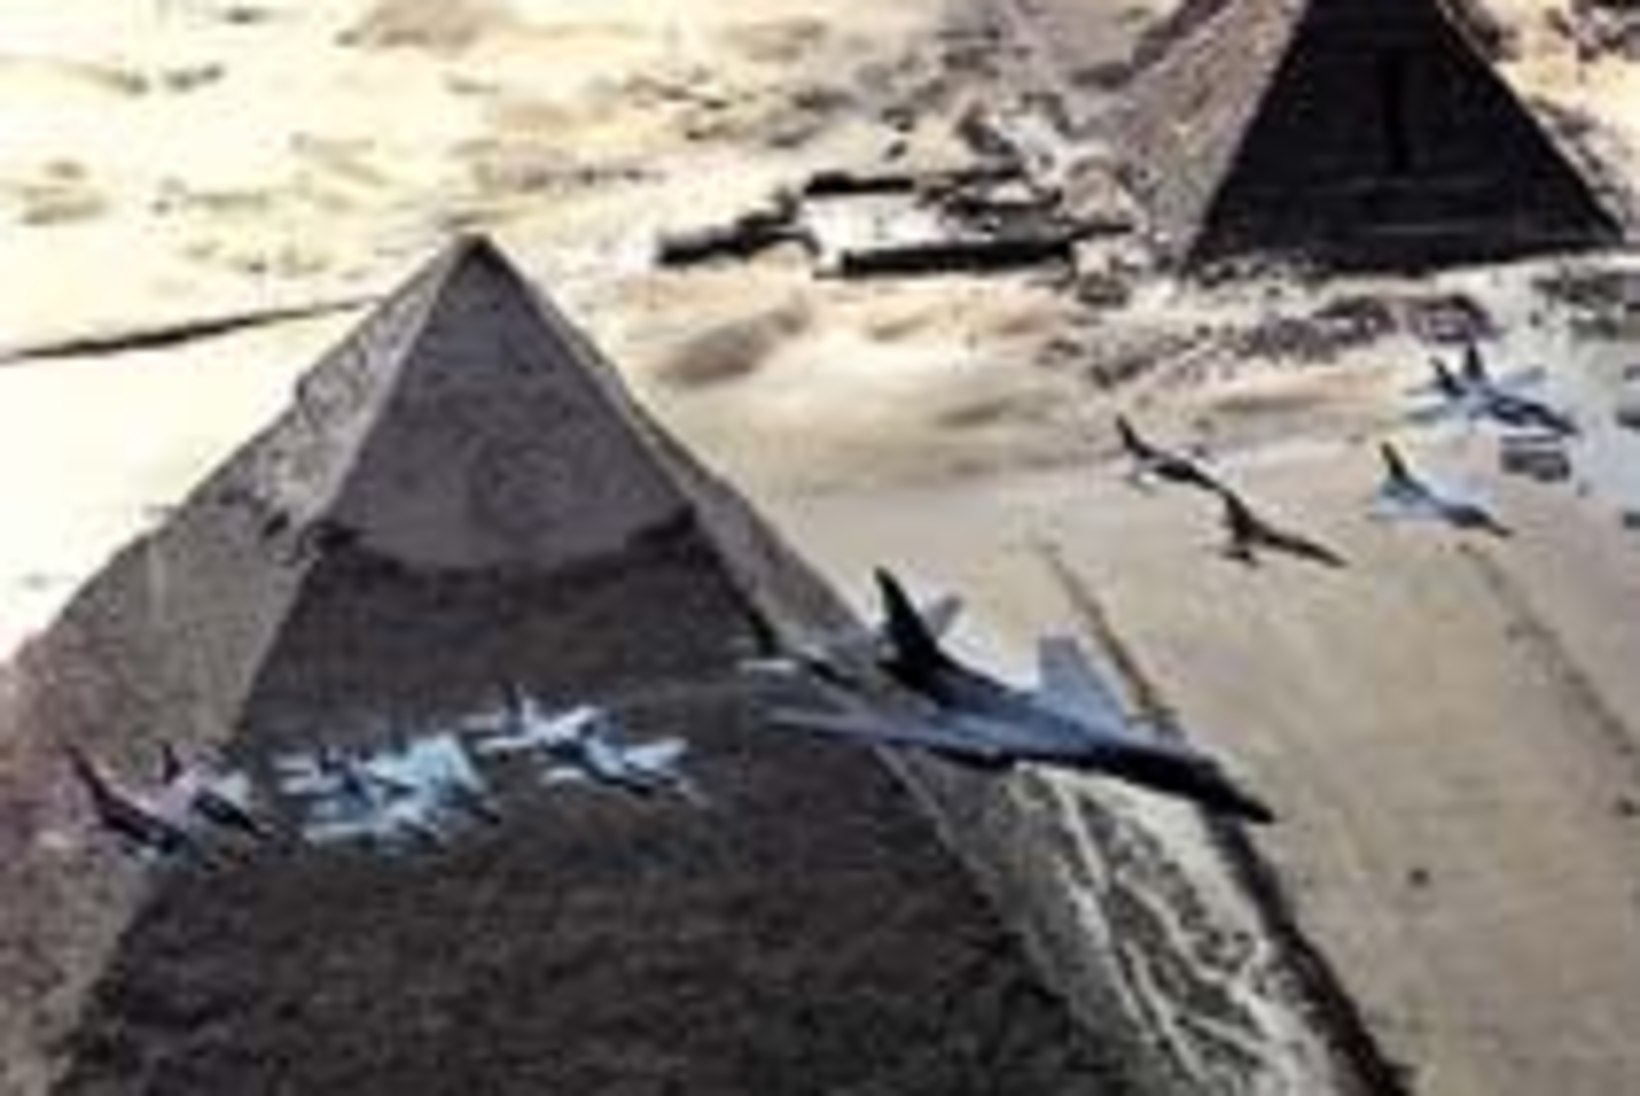 Cheopsi püramiid jättis saladuse enda teada